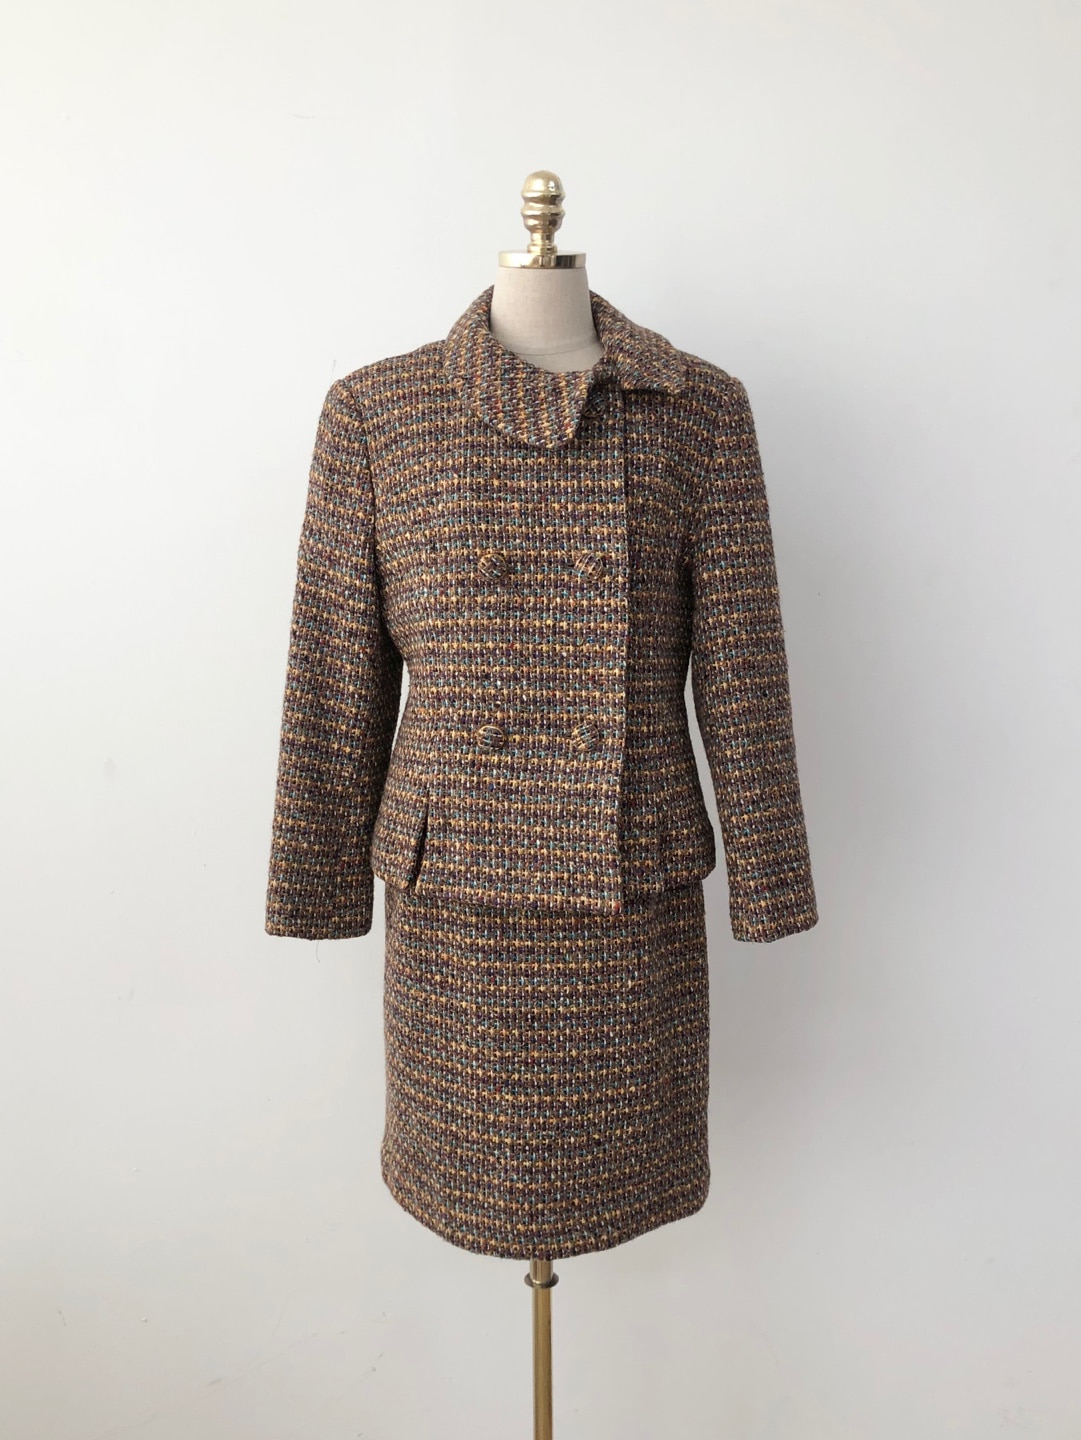 Brown multi-colored tweed jacket skirt setup [28 inch]